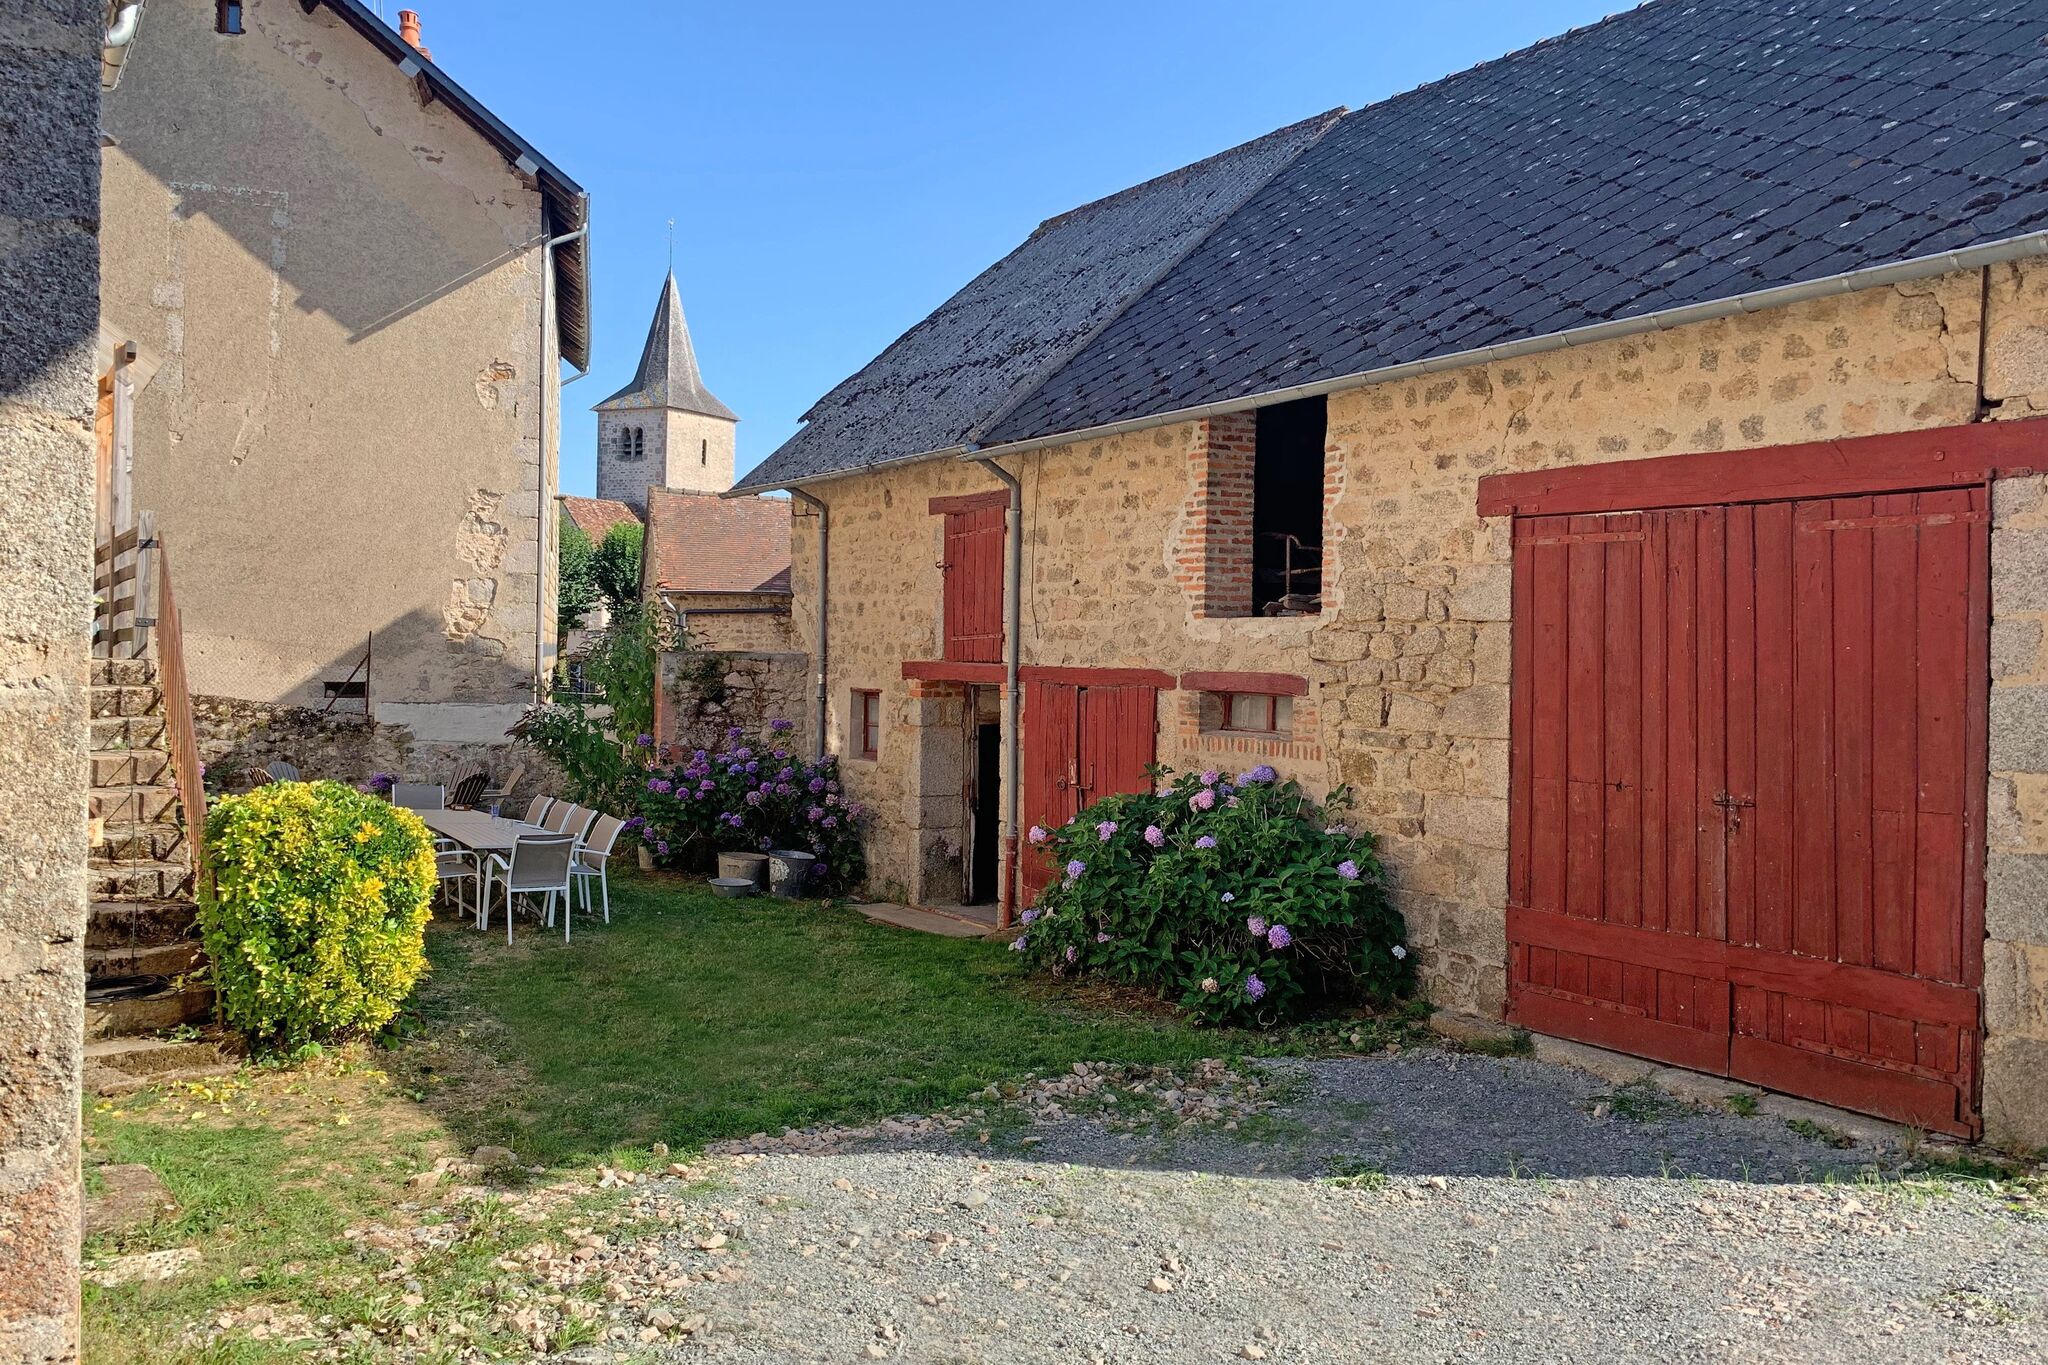 Prachtig met smaak gerestaureerd dorpshuis met fijne tuin, in Bourgogne